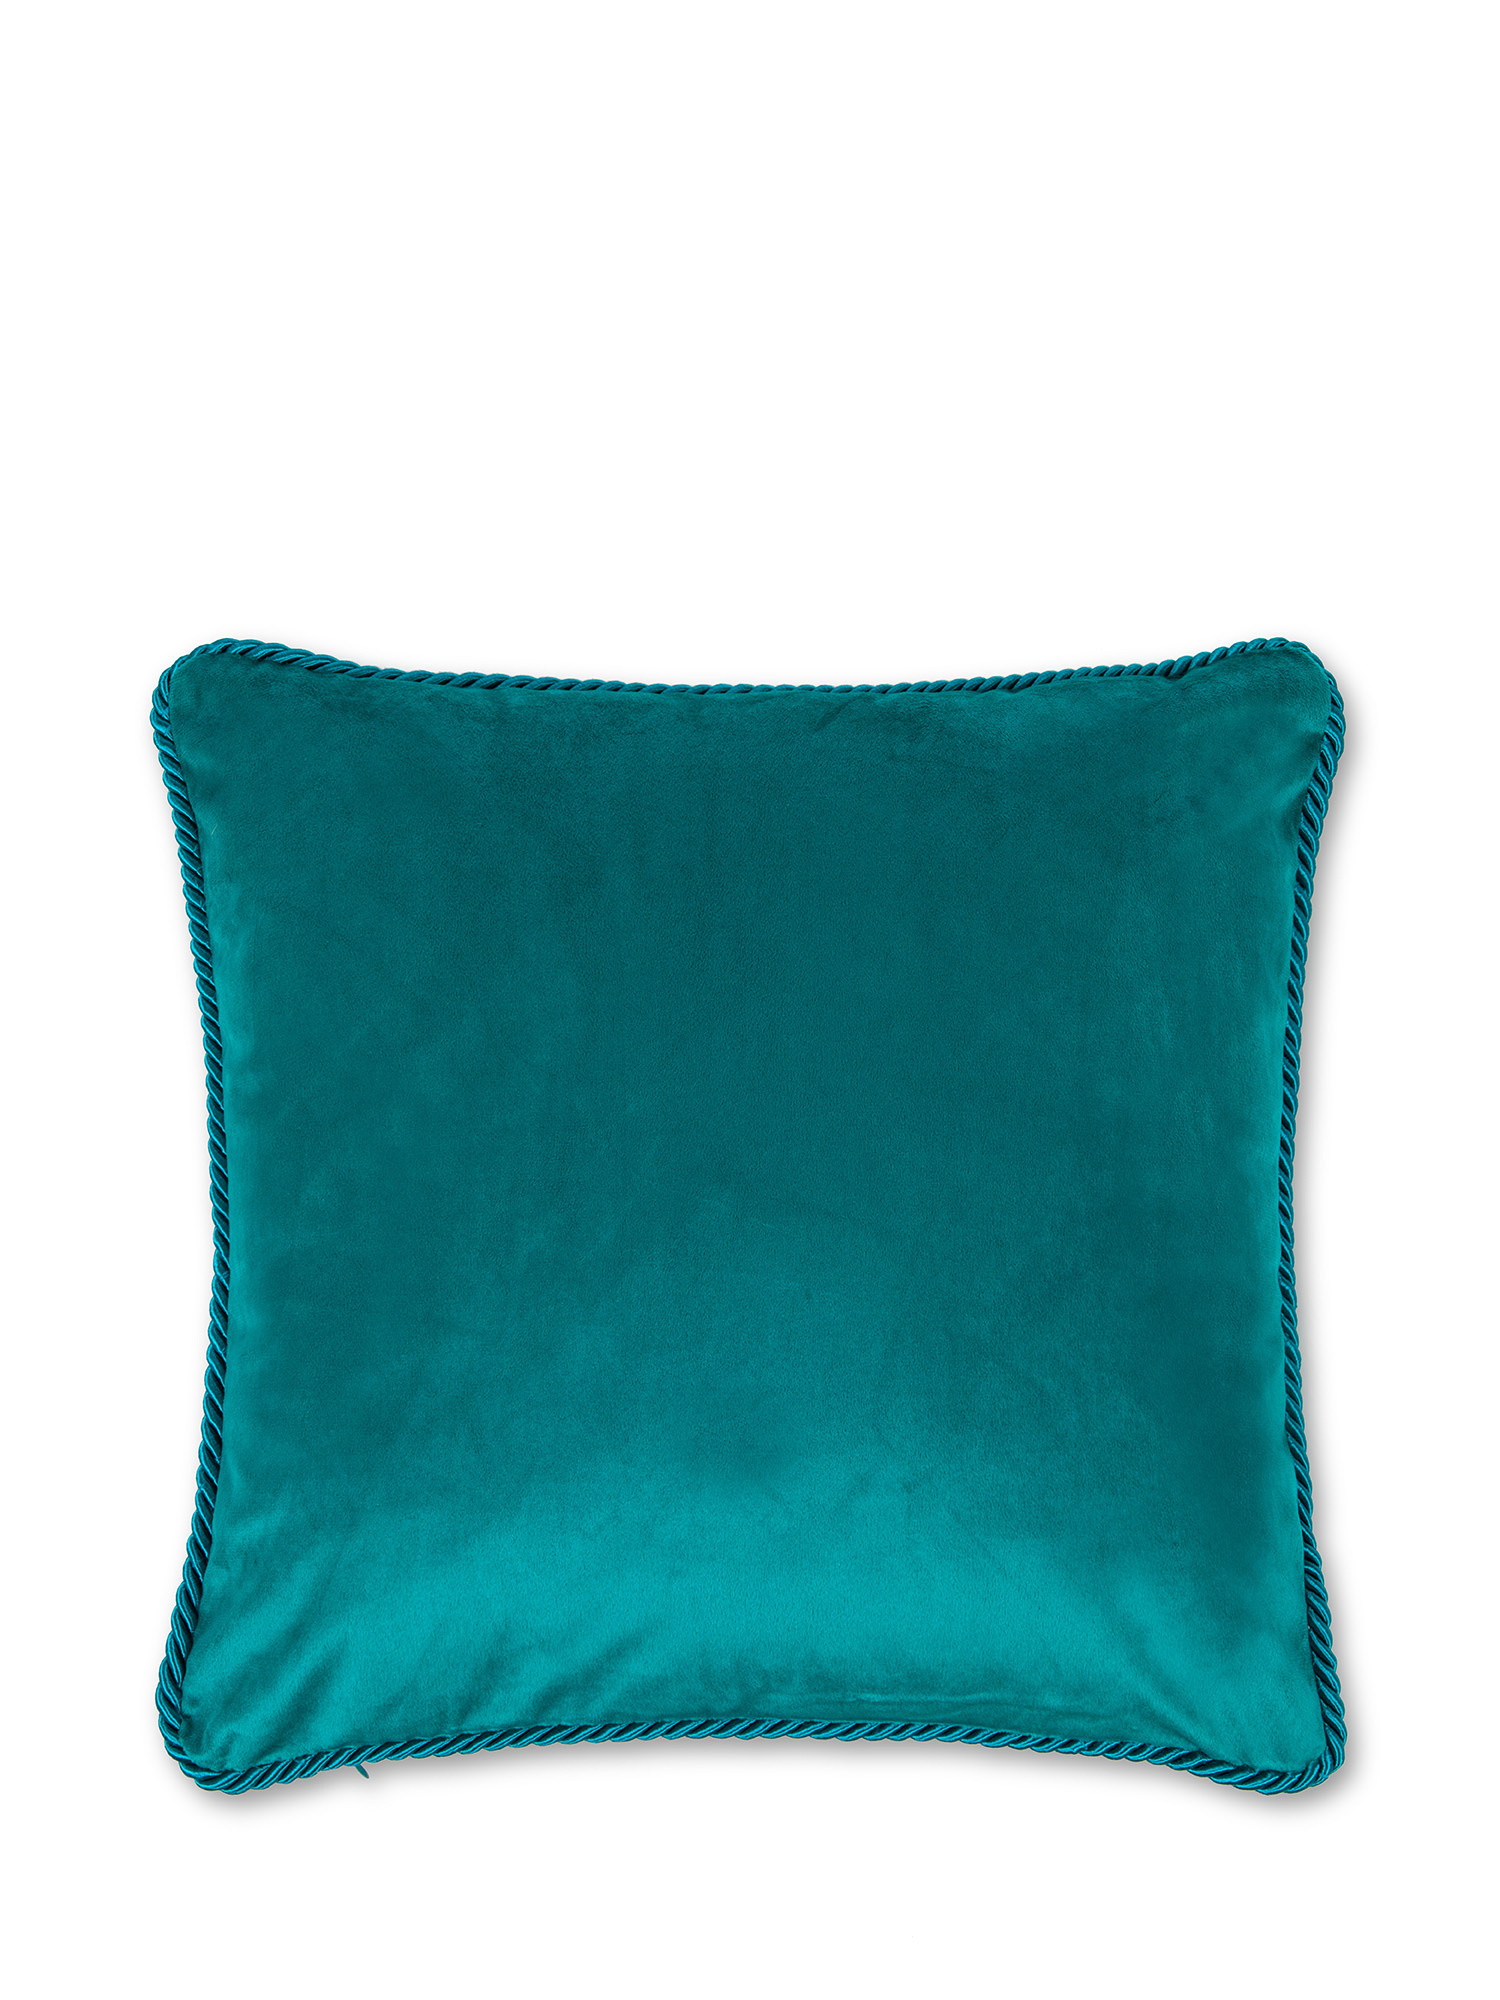 Solid color velvet cushion 45X45cm, Teal, large image number 0